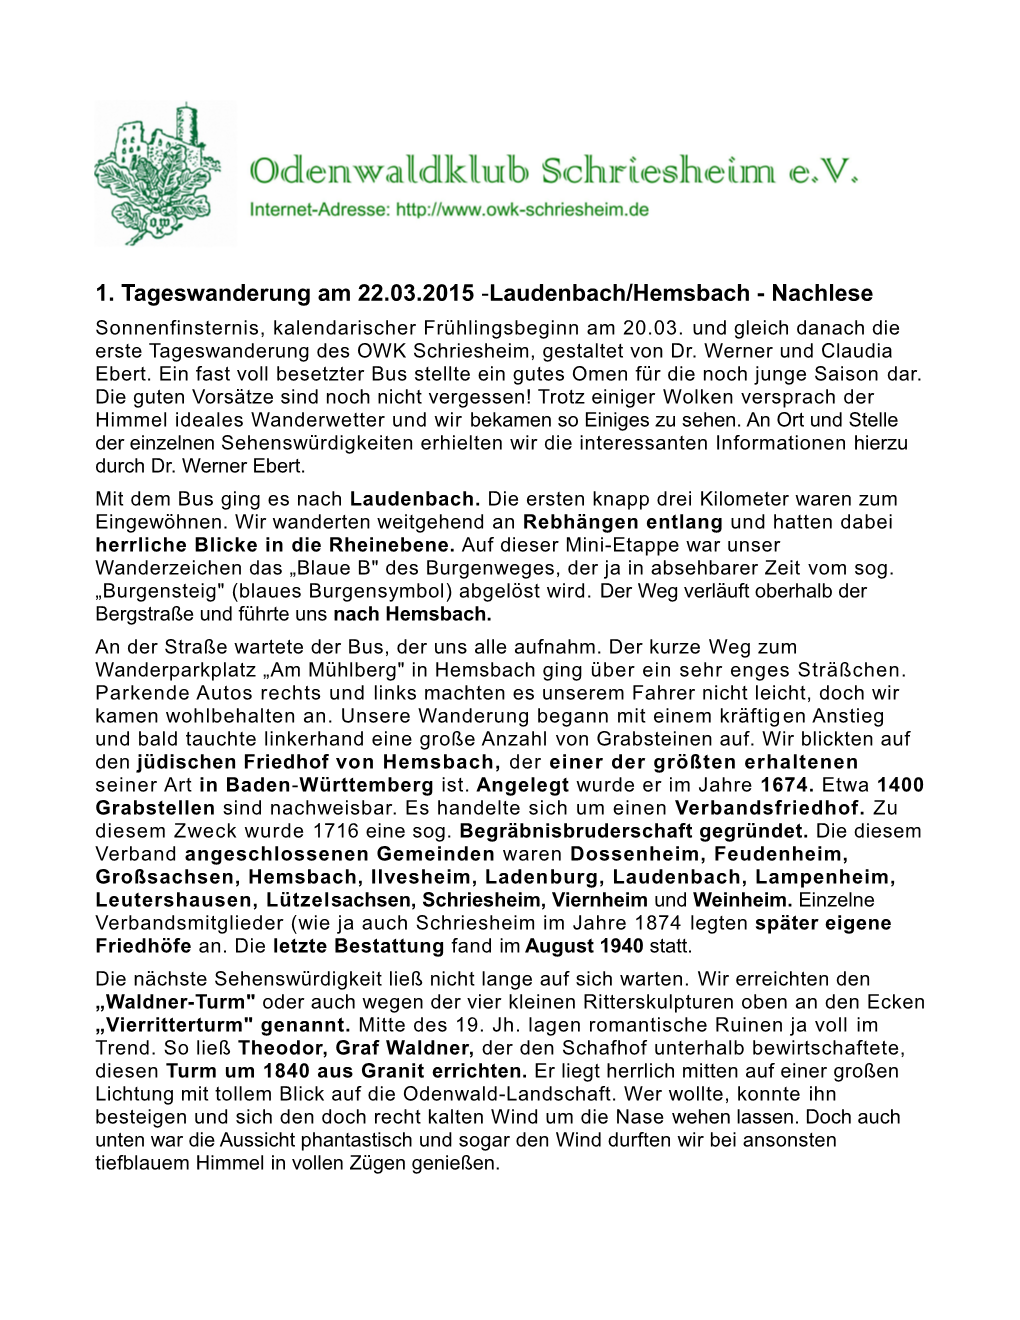 1. Tageswanderung Am 22.03.2015 -Laudenbach/Hemsbach - Nachlese Sonnenfinsternis, Kalendarischer Frühlingsbeginn Am 20.03